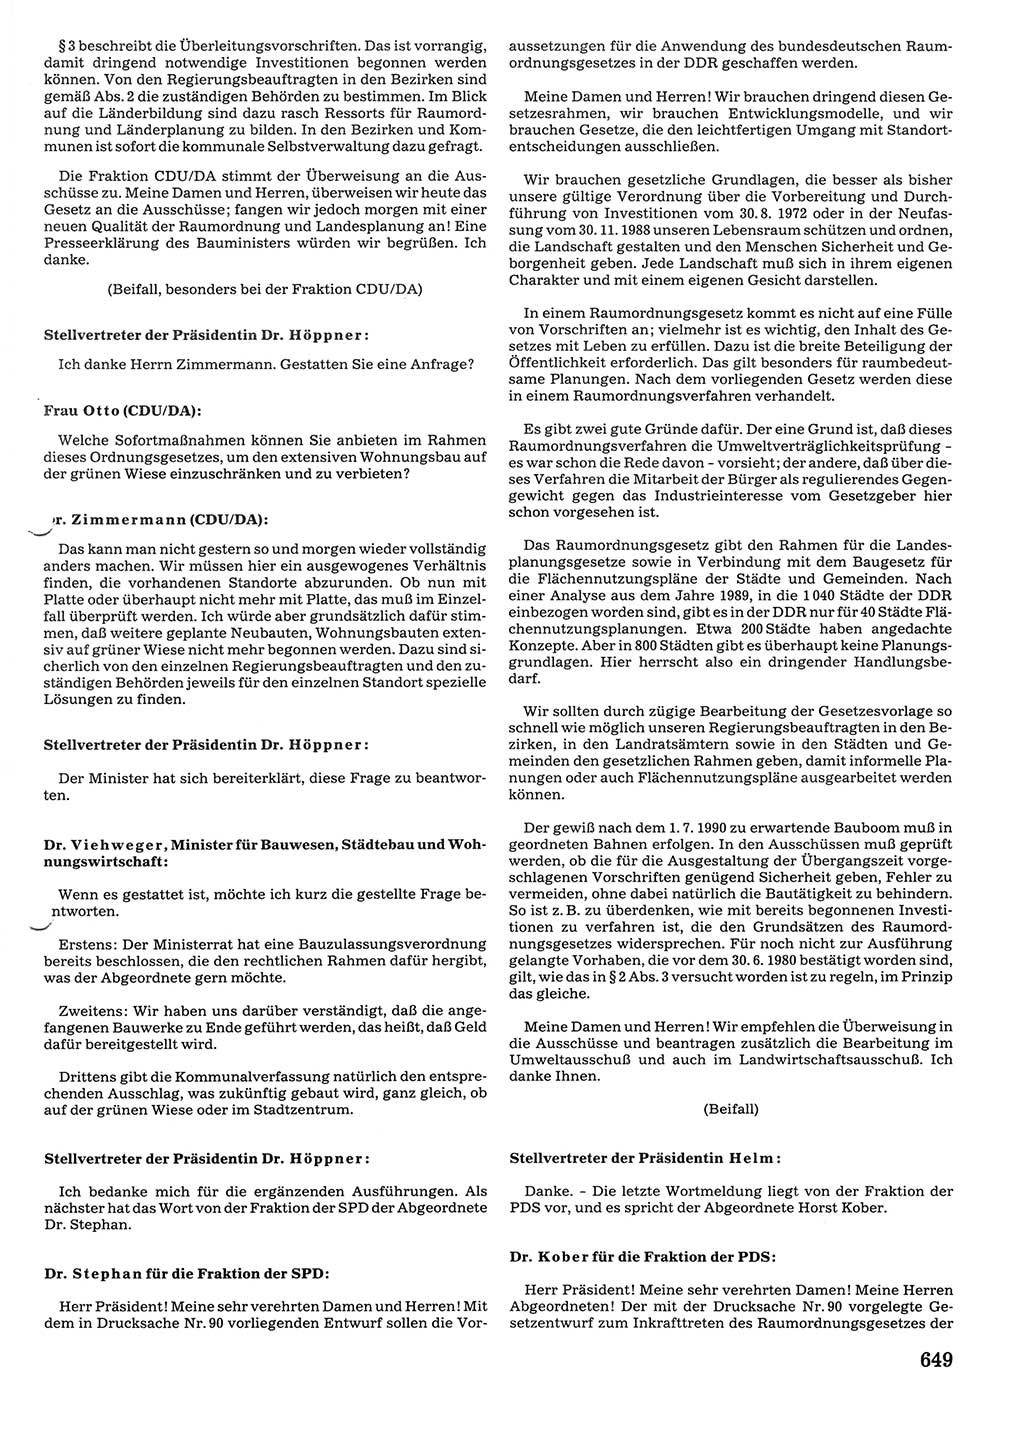 Tagungen der Volkskammer (VK) der Deutschen Demokratischen Republik (DDR), 10. Wahlperiode 1990, Seite 649 (VK. DDR 10. WP. 1990, Prot. Tg. 1-38, 5.4.-2.10.1990, S. 649)